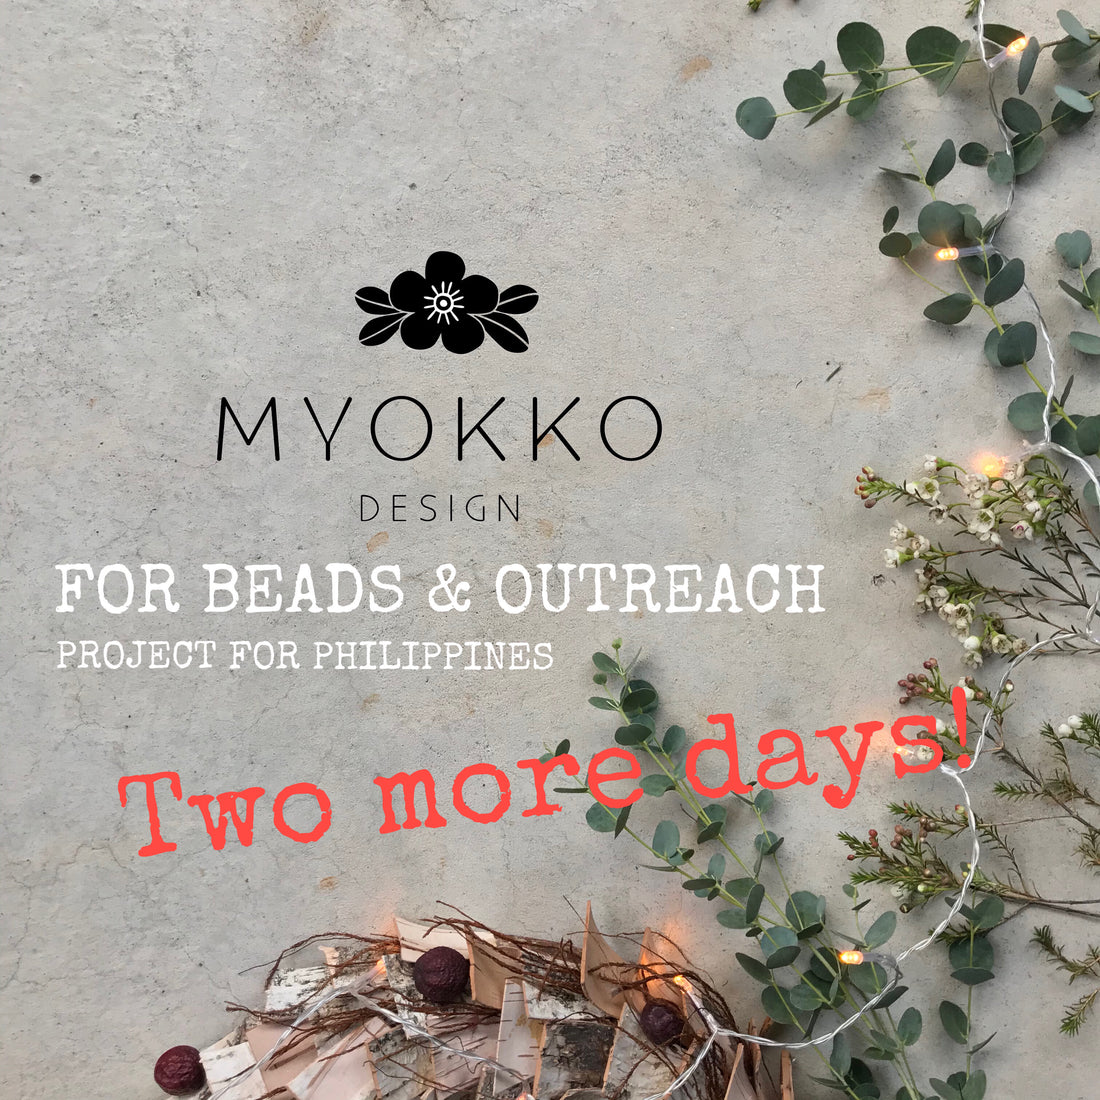 Myokko for "Beads & Outreach"